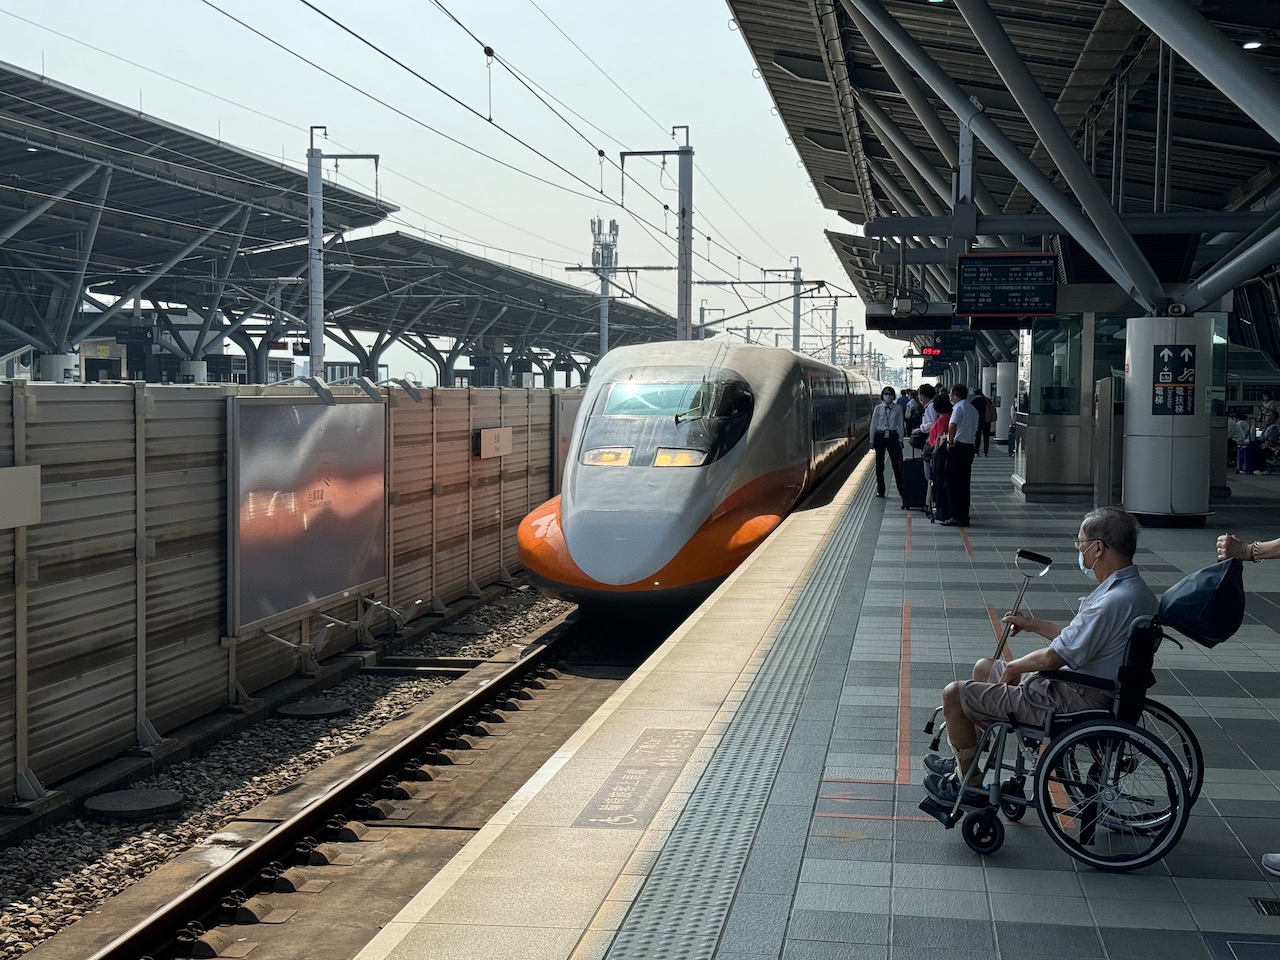 The high speed train to Taipei